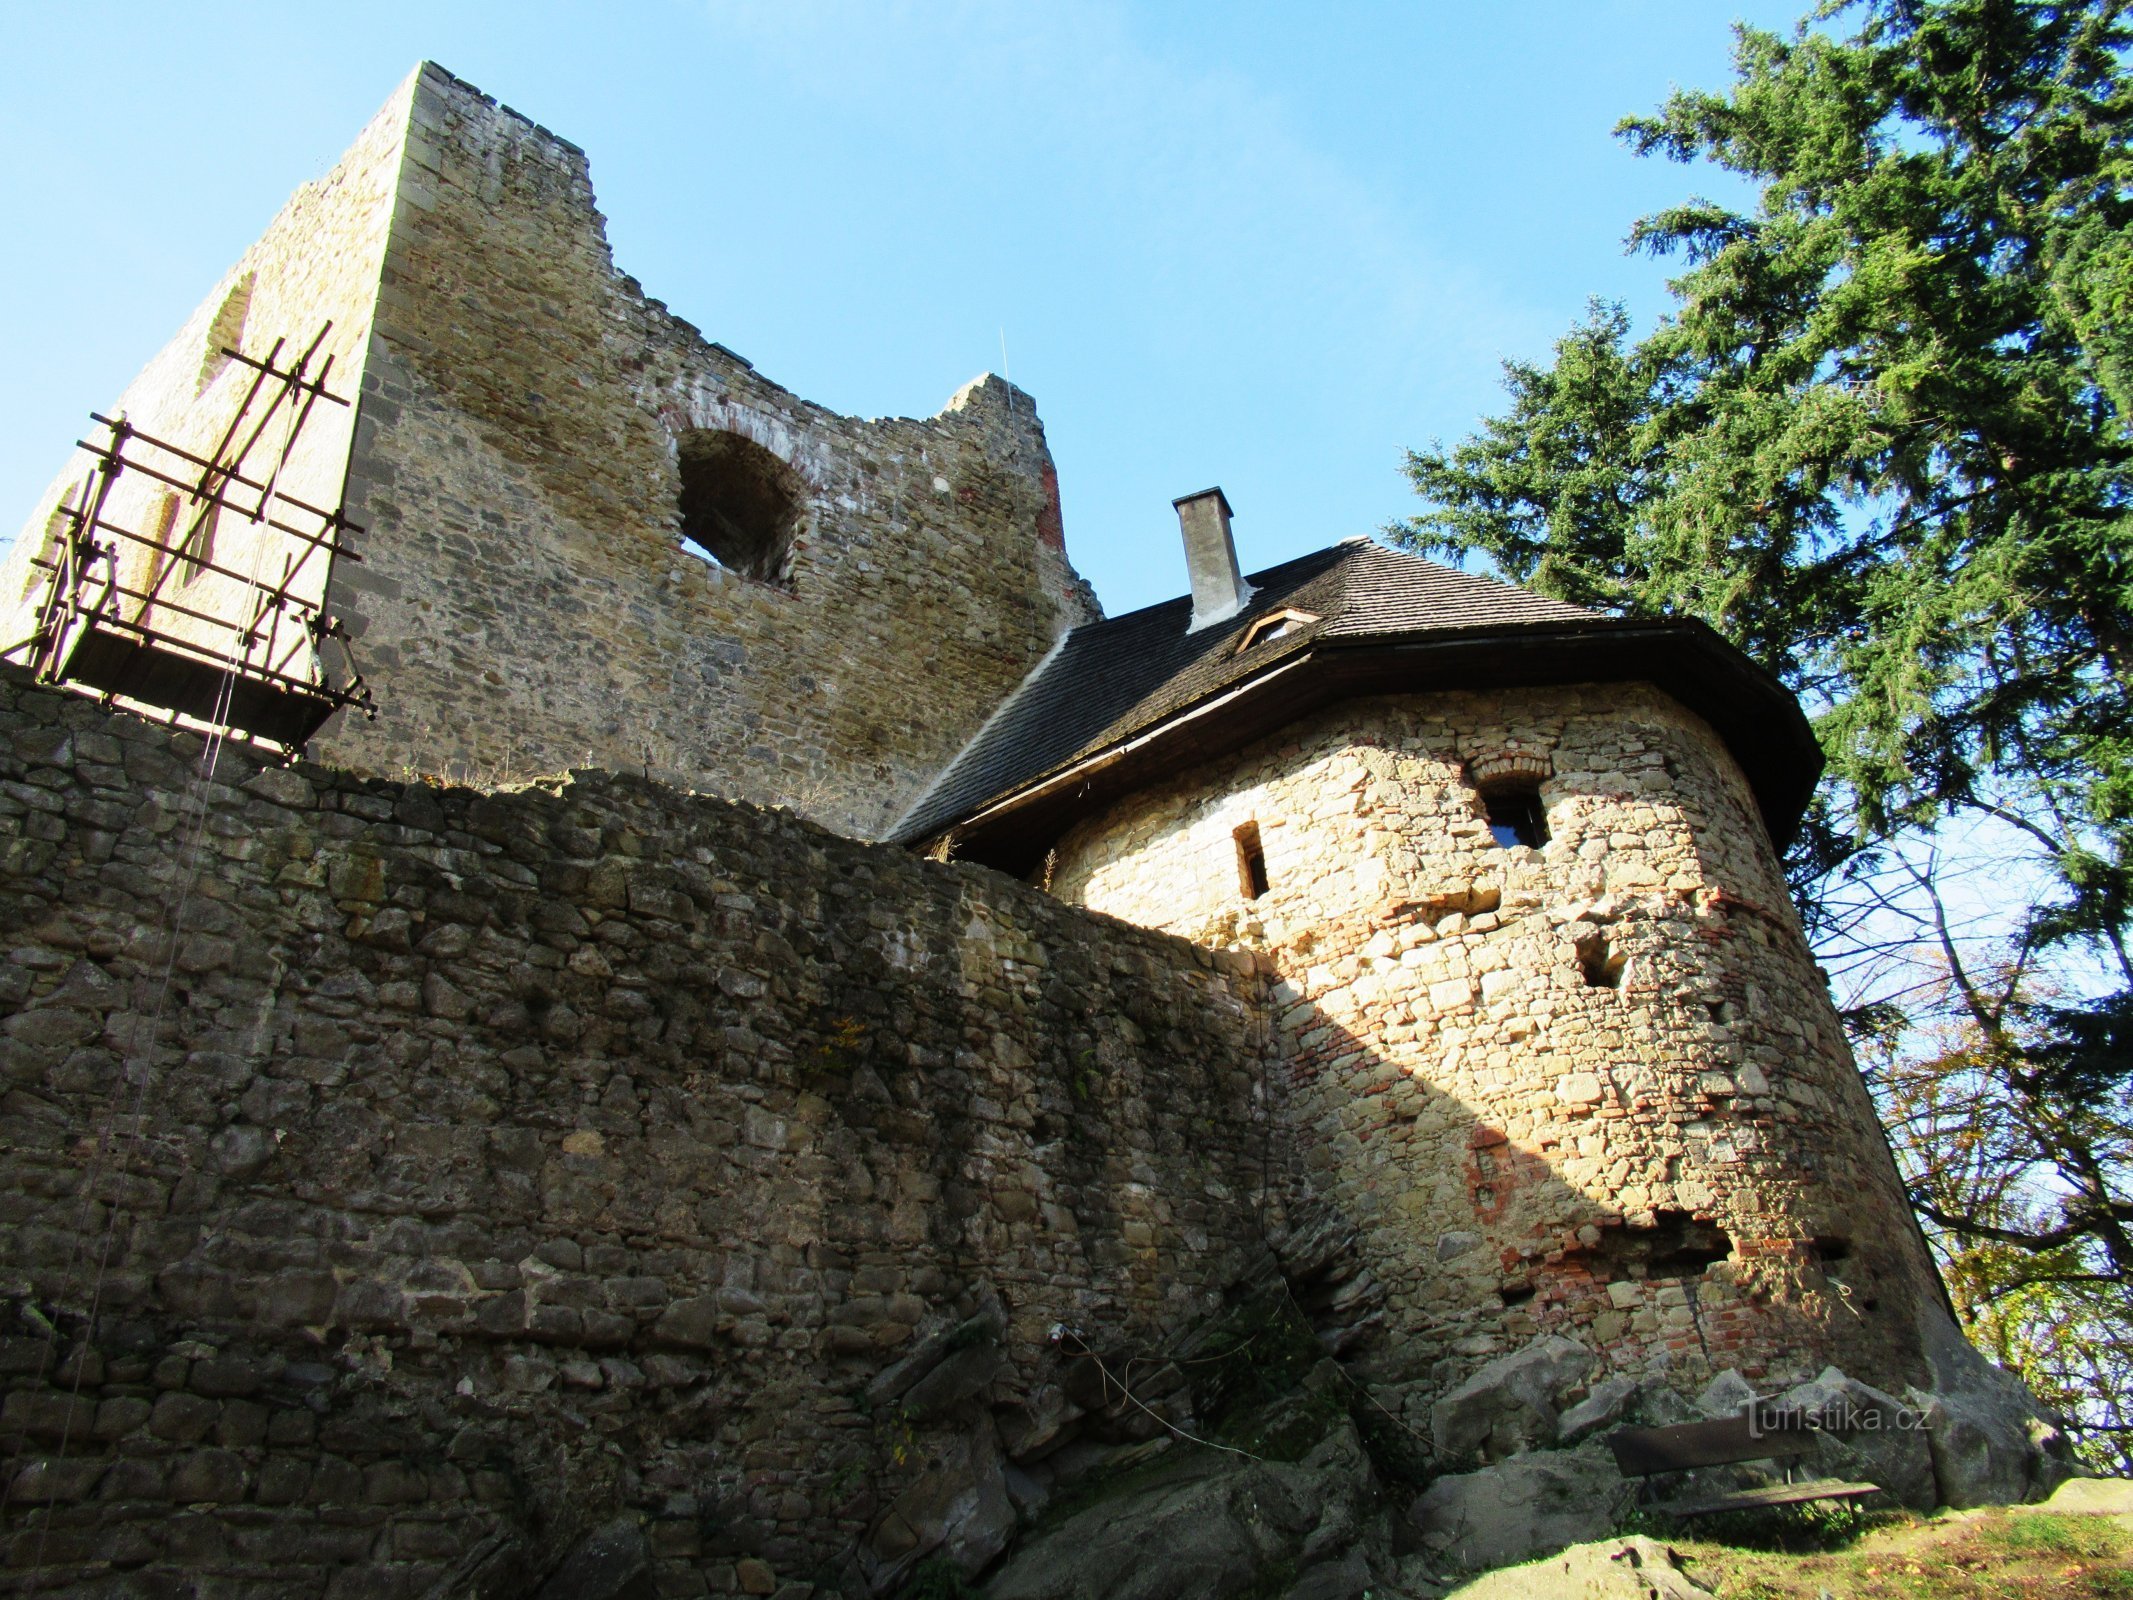 Сюрприз посеред лісу – слідами французької готики до замку Цимбурк